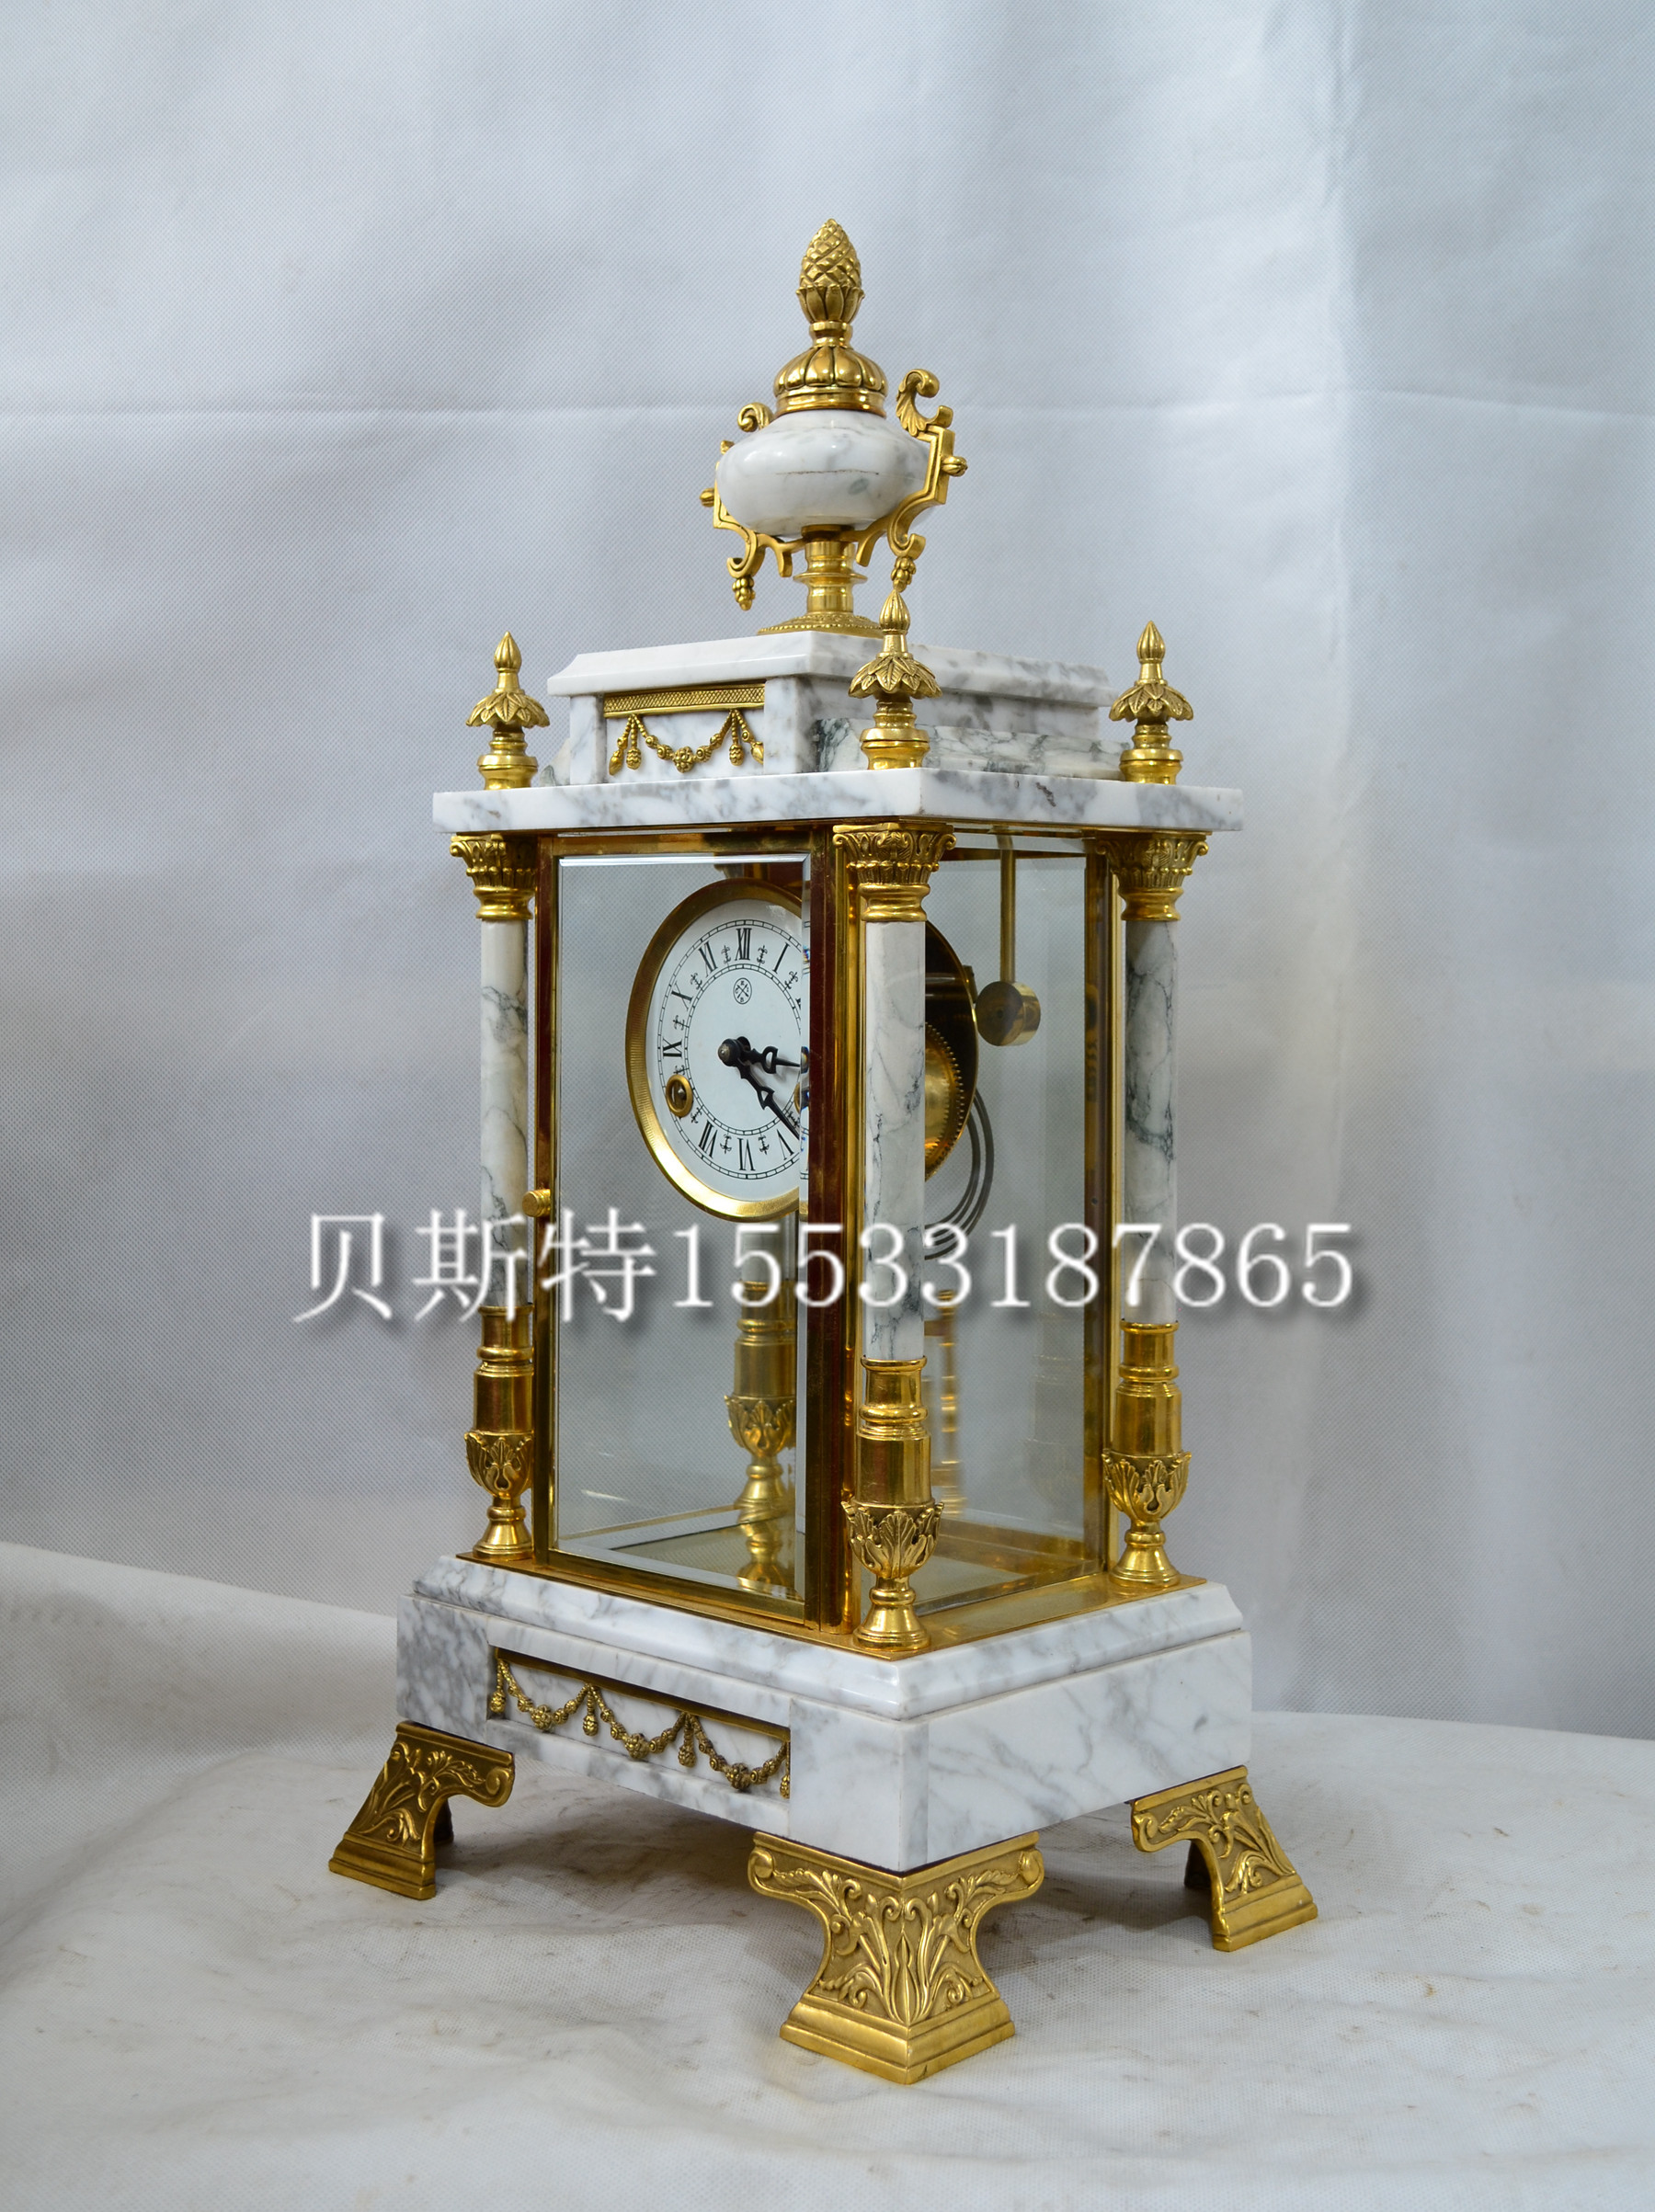 钟表机械天然大理石座钟欧式家居壁炉条案自鸣钟创意家居贝斯特钟